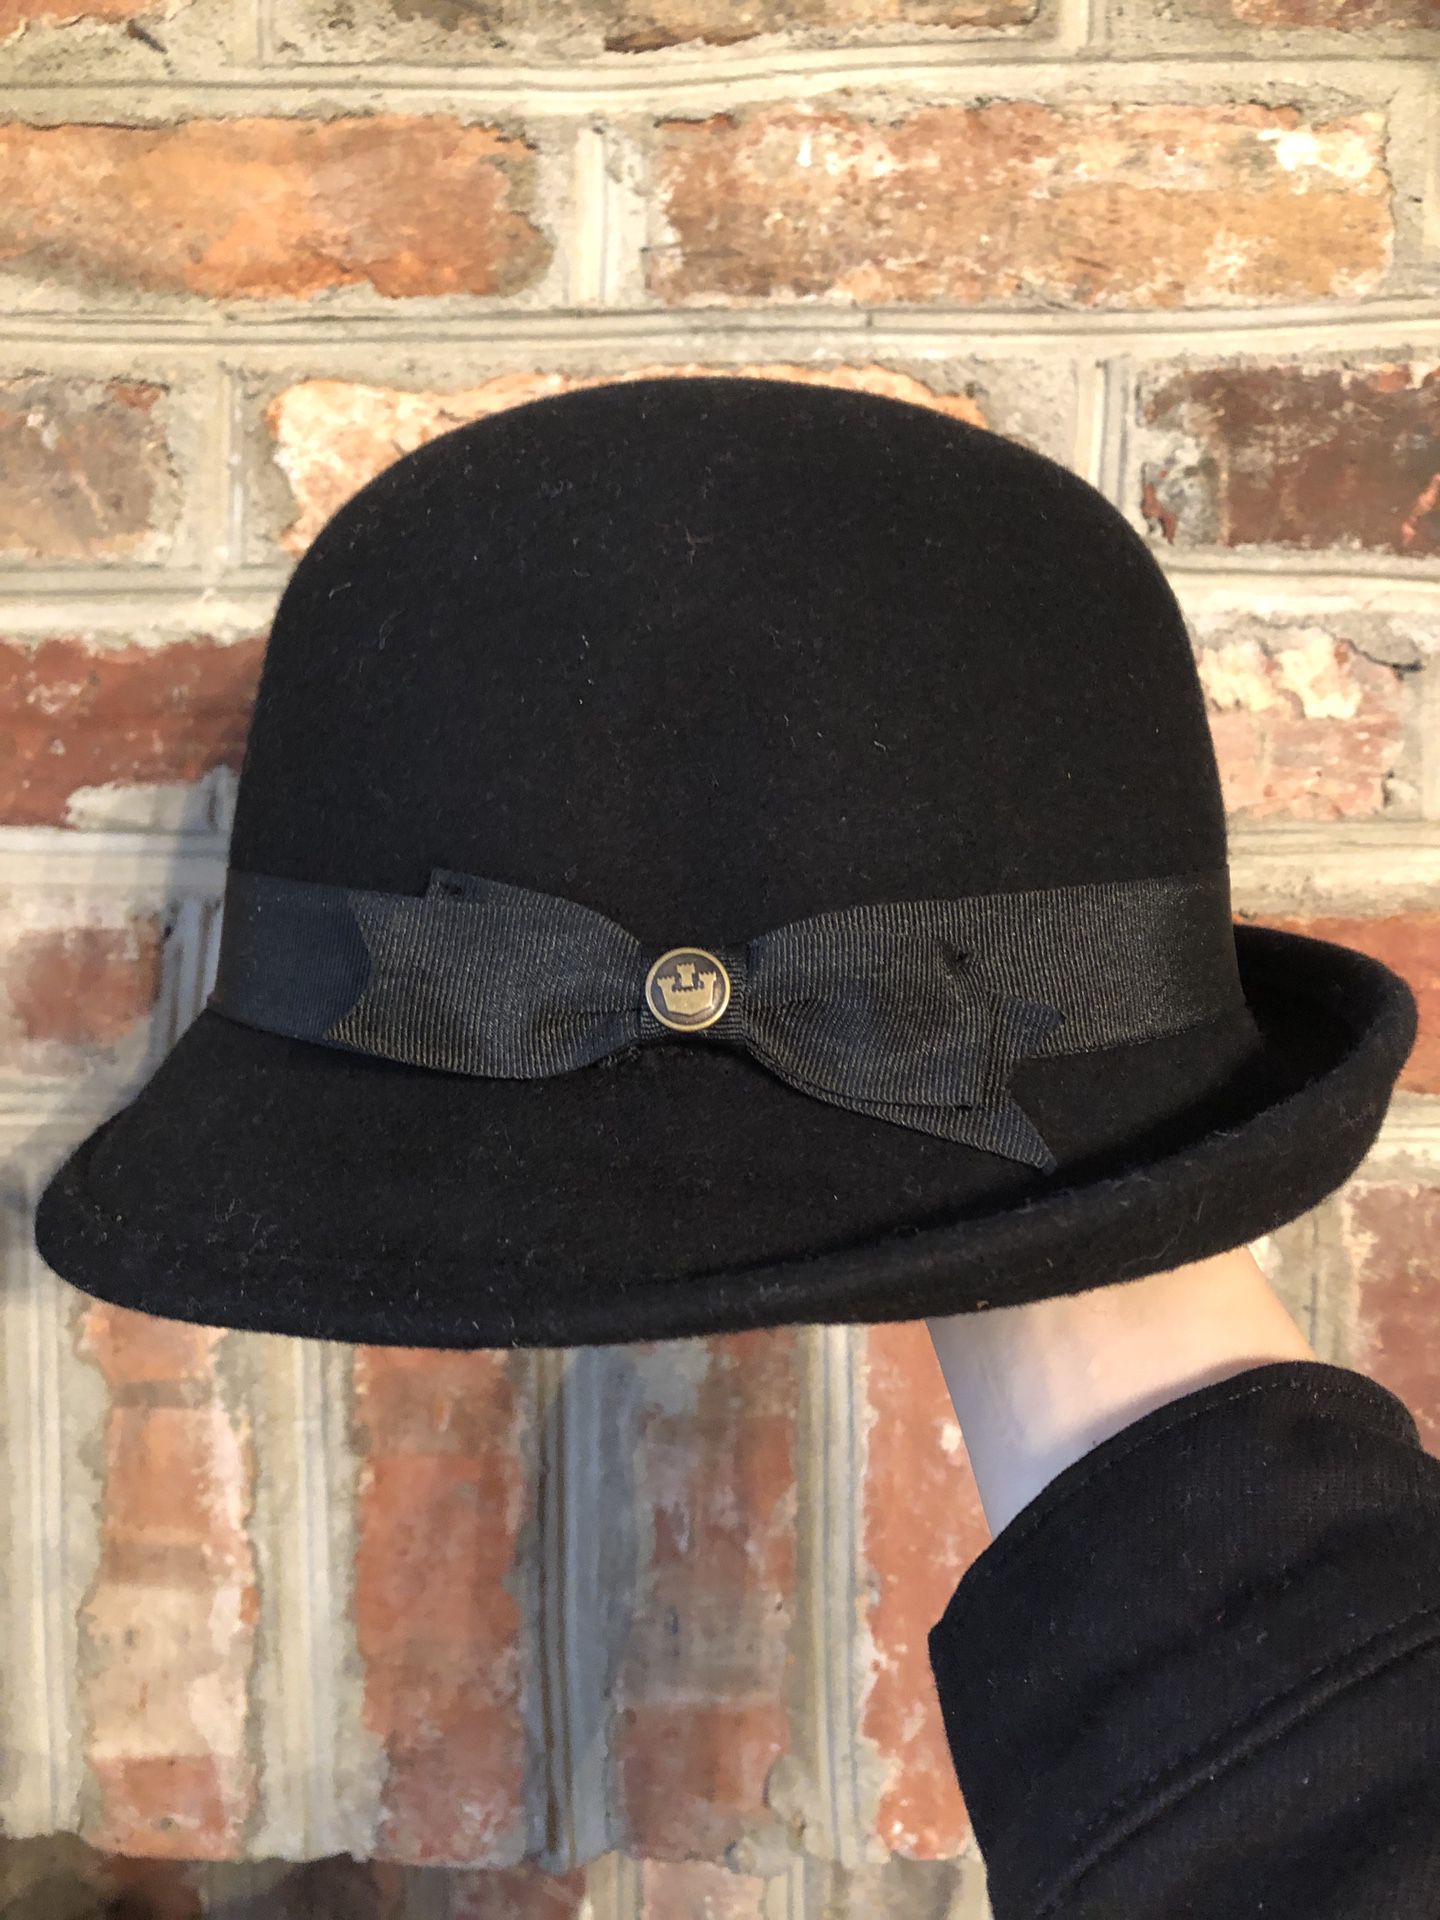 Goorin Bros. Hat “Laura Wilder” Asymmetrical Cloche (Black)